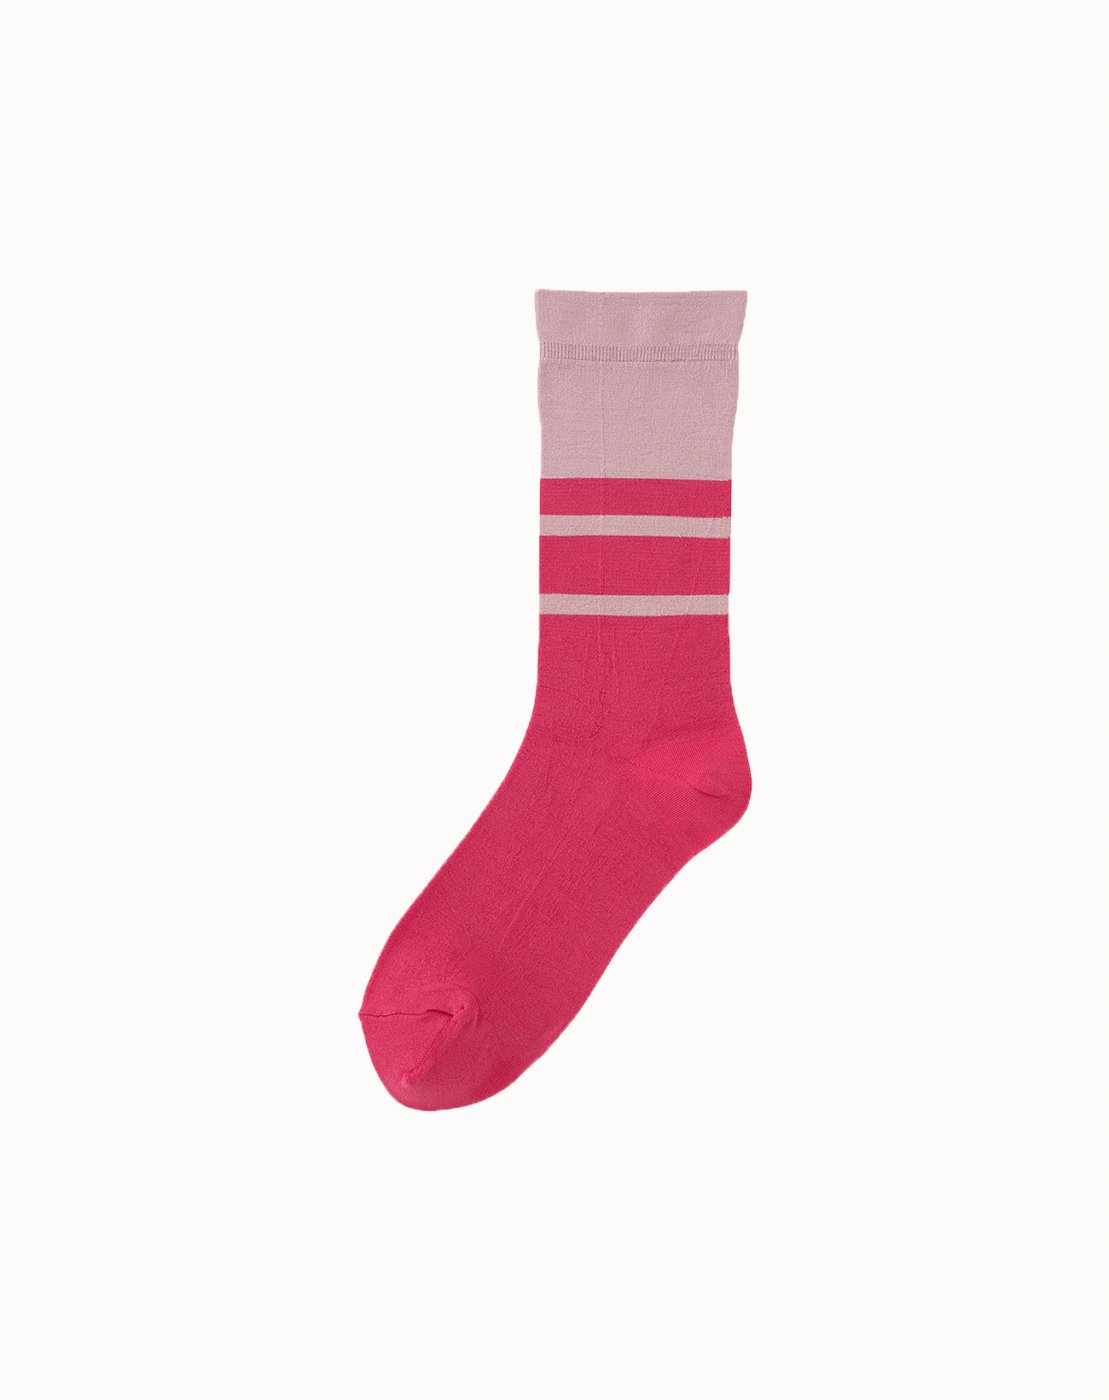 leur logette - Bicolor Socks - Pink